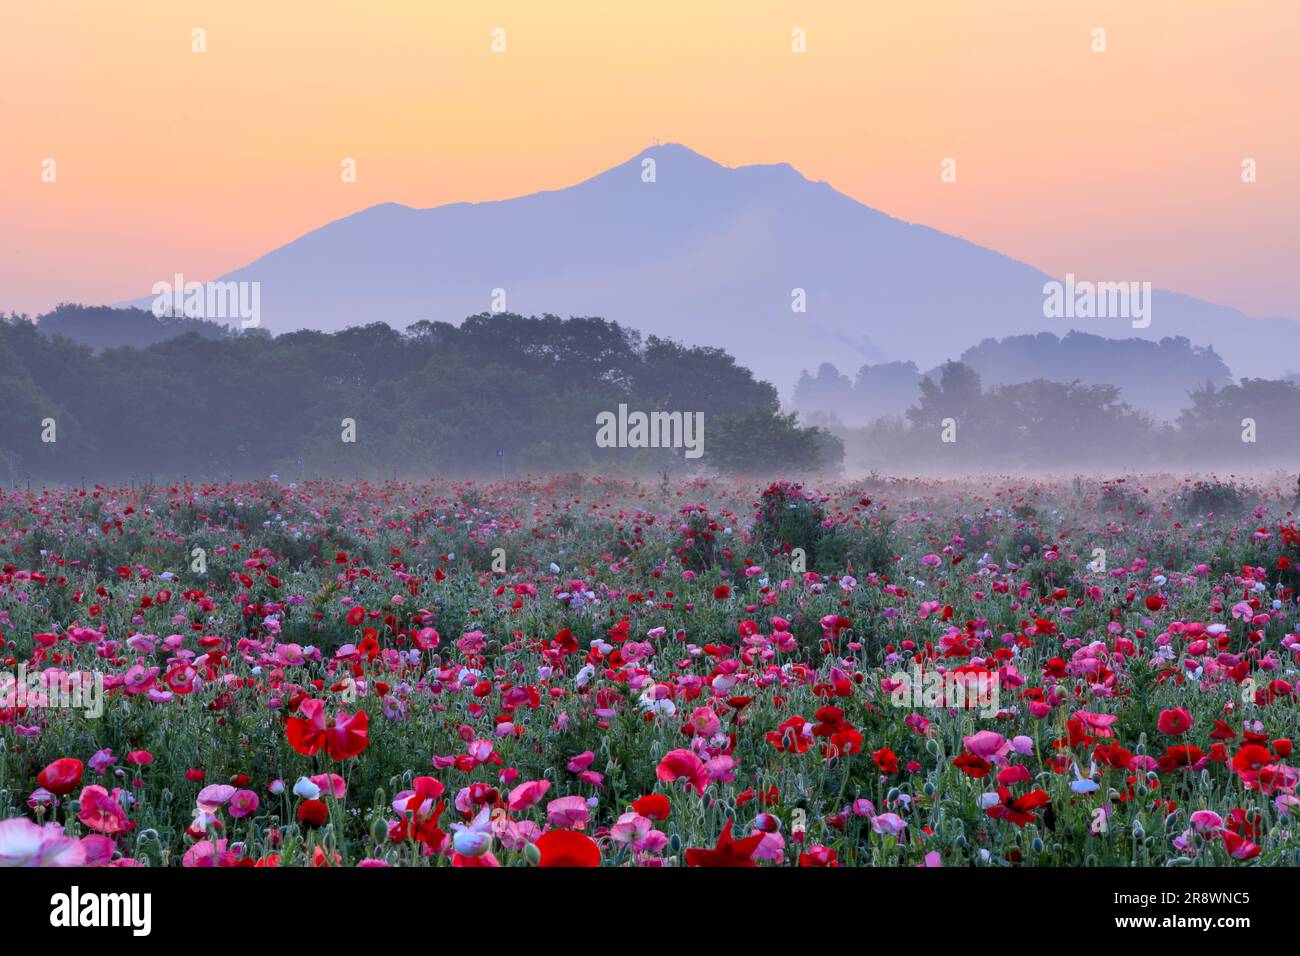 Mt. Tsukuba and poppies Stock Photo